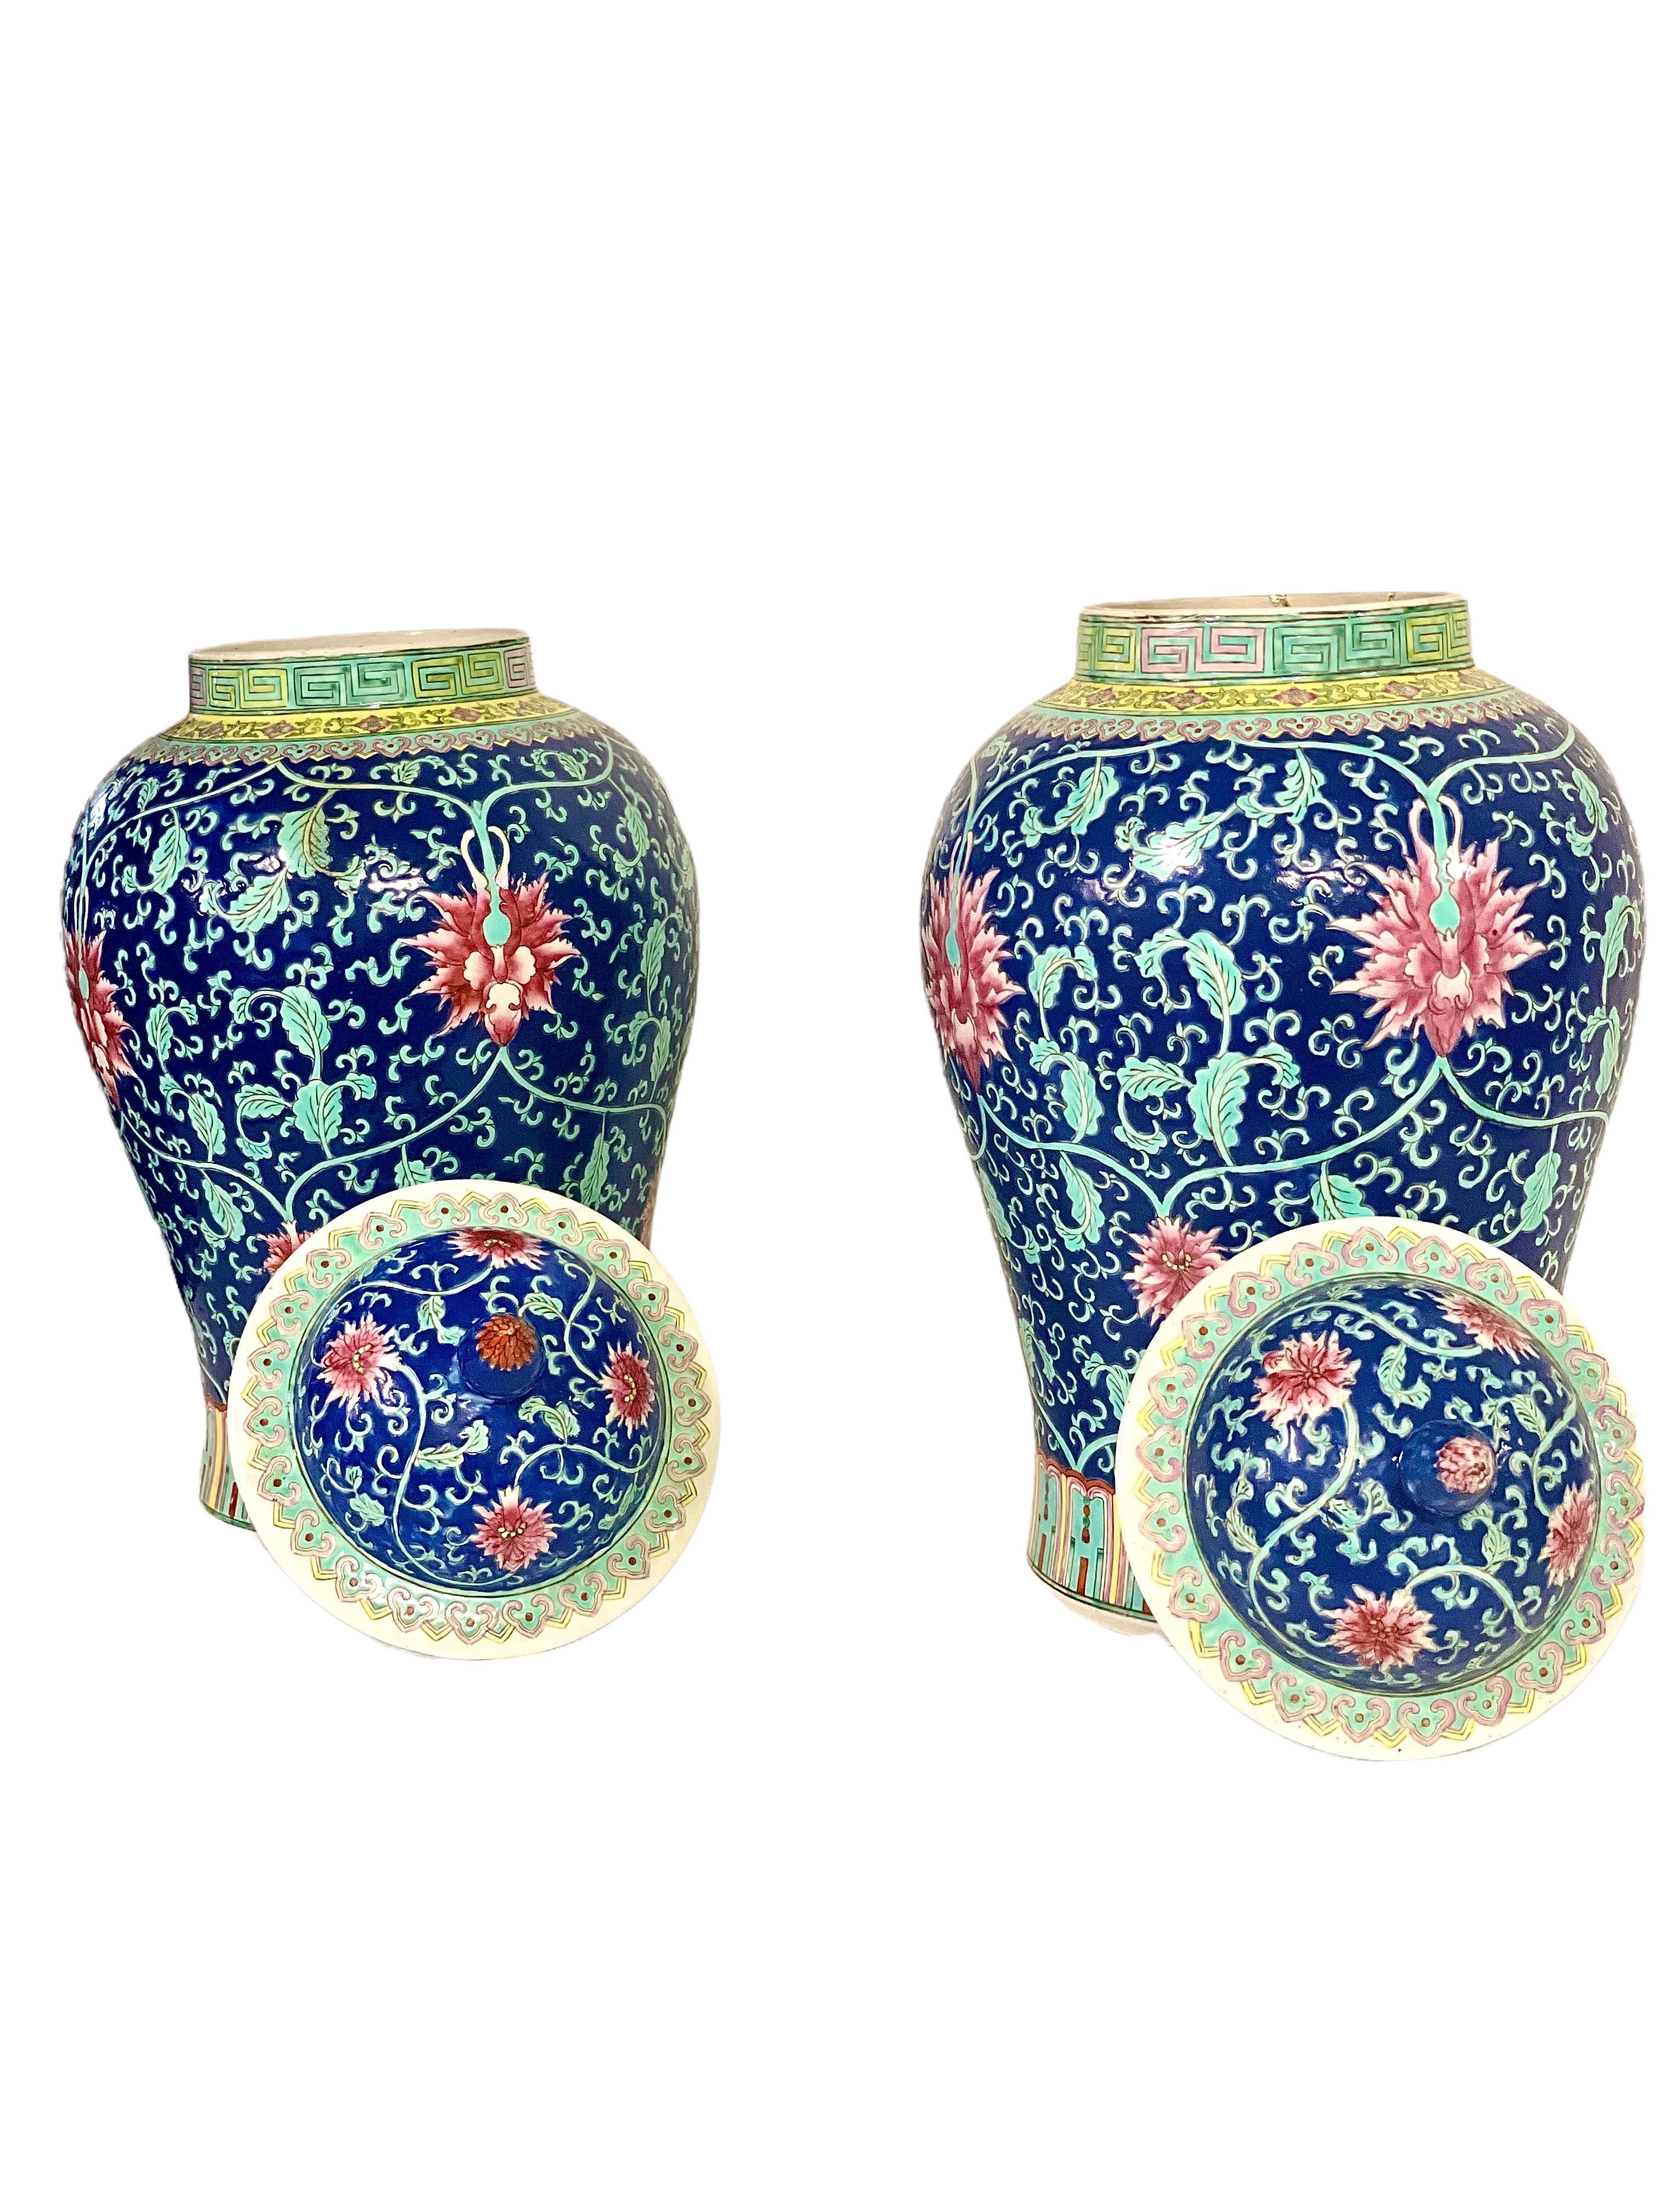 Paire de grands vases de forme balustre finement décorés, datant de la période de la République chinoise, présentant un motif peint à la main aux couleurs vives, composé de pivoines rouges et de feuillage vert pâle sur un fond bleu foncé. Datant du